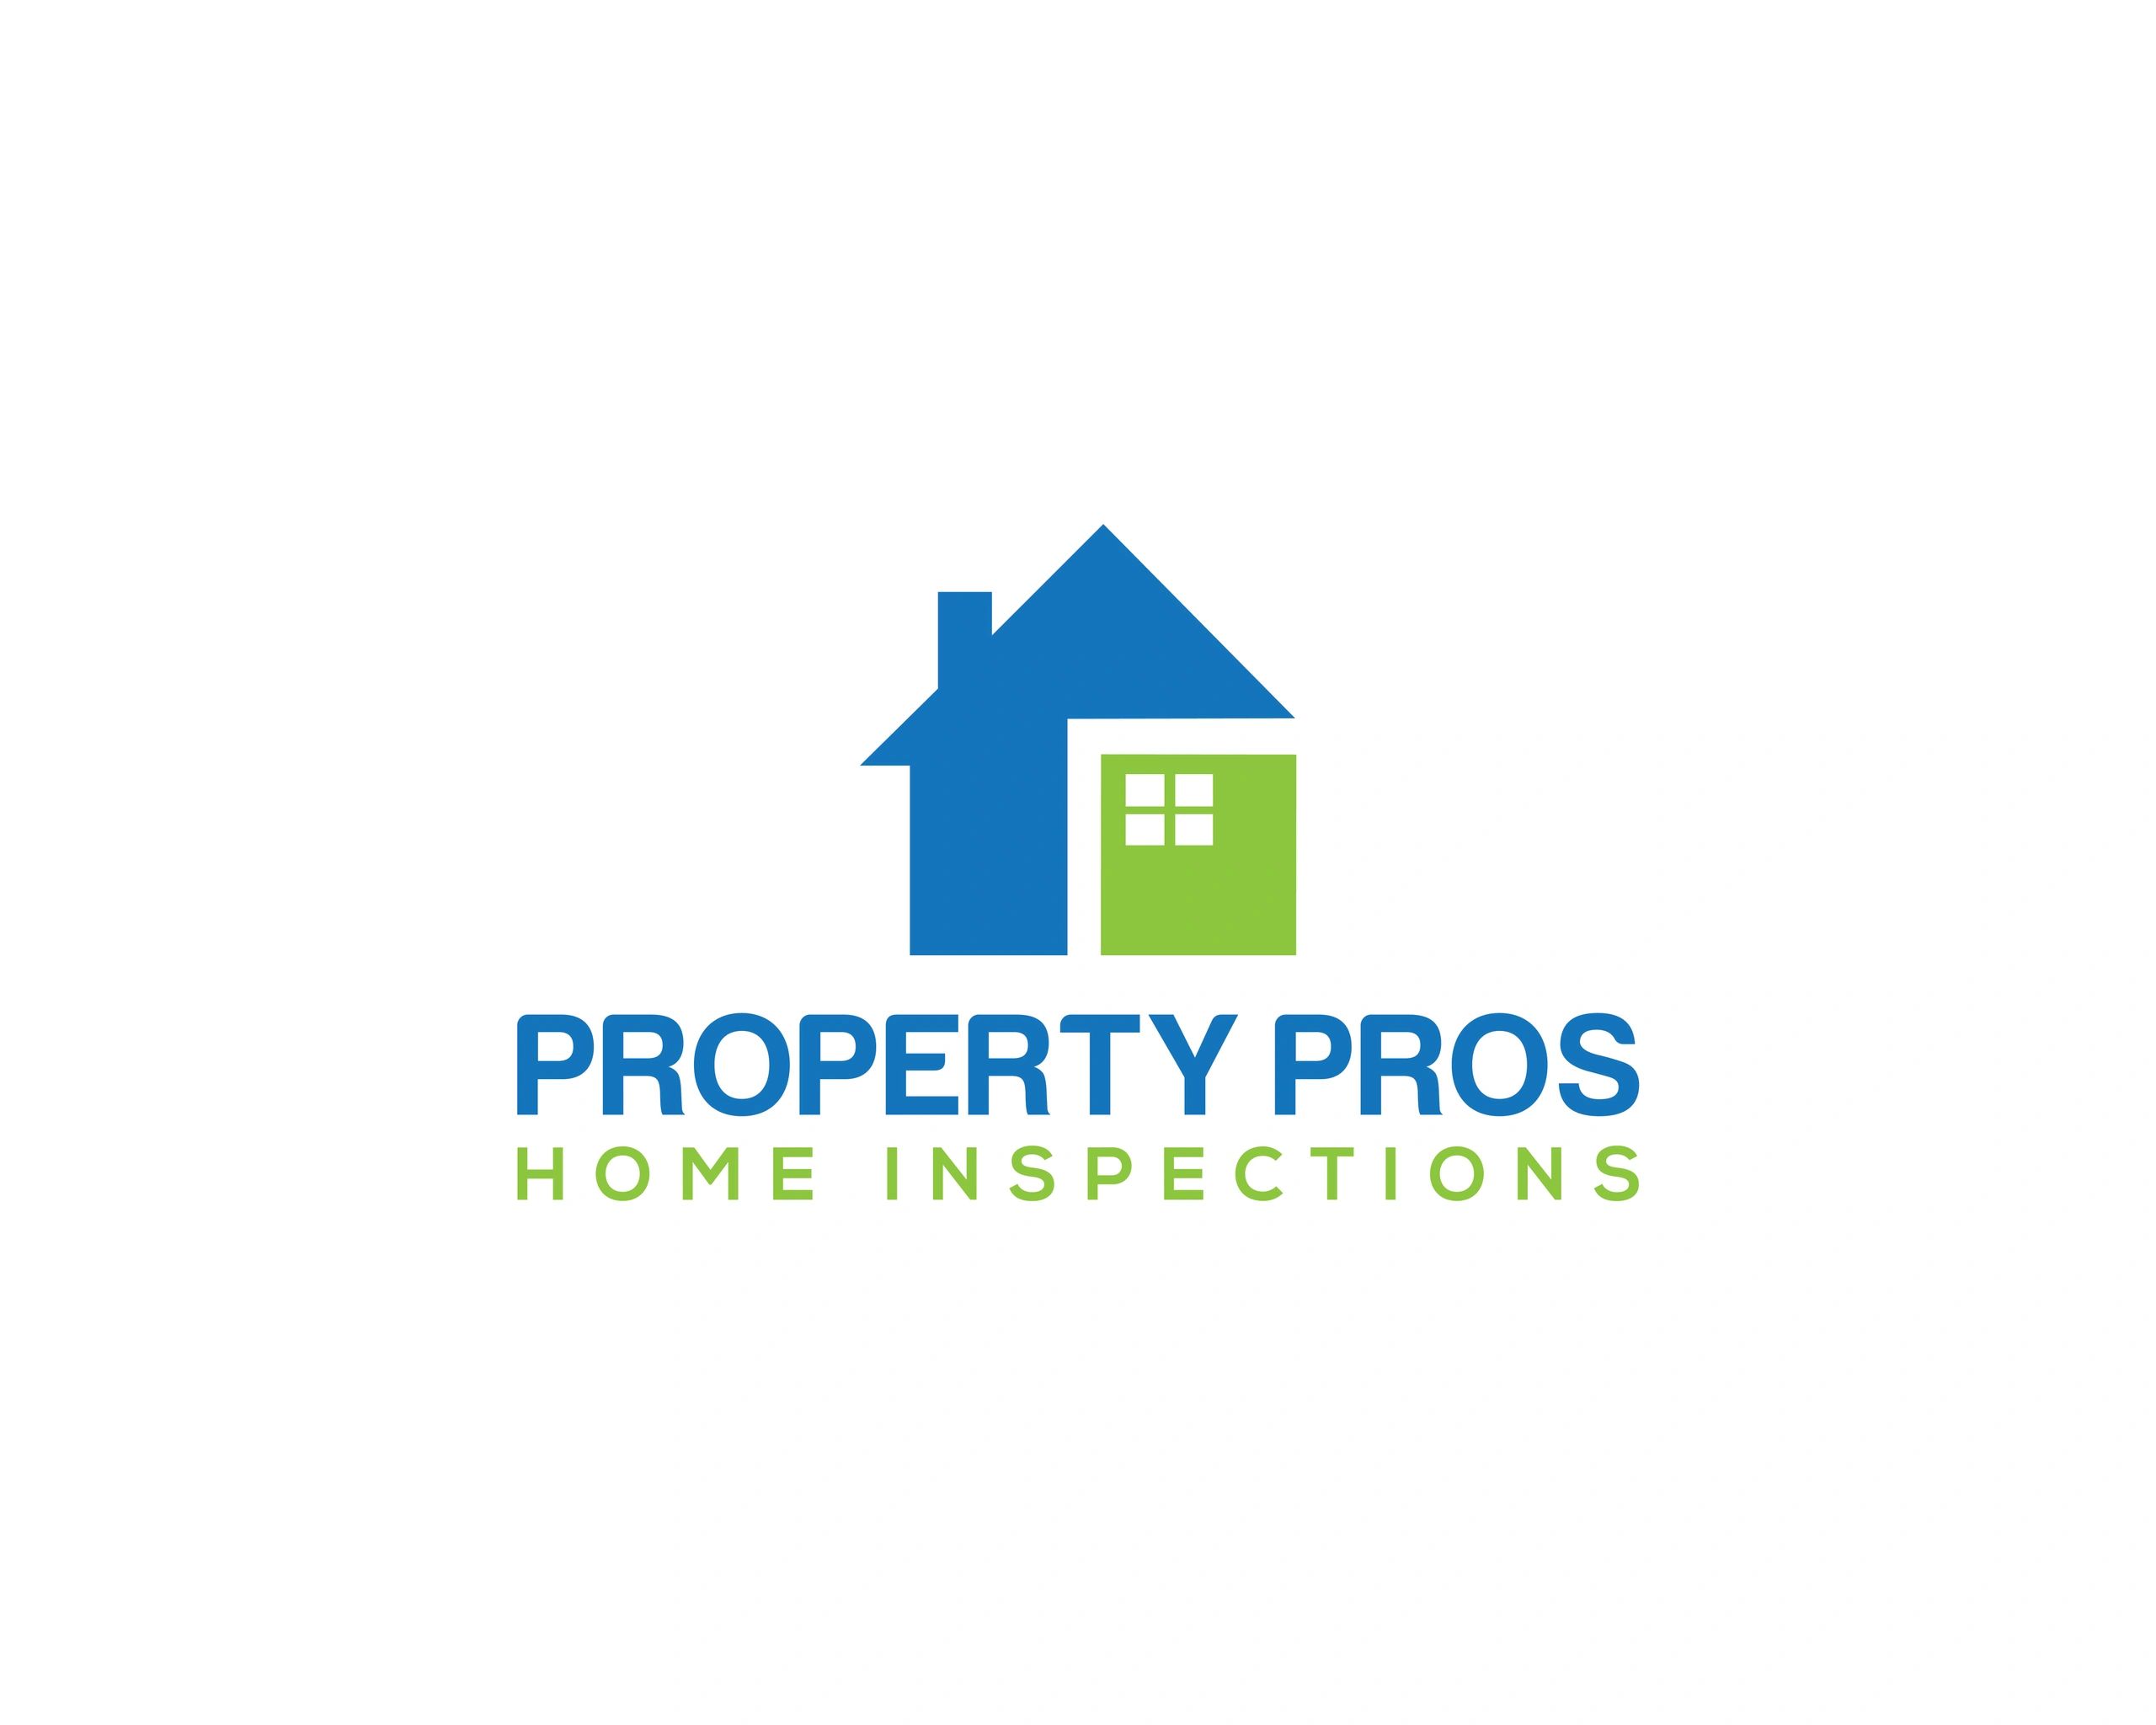 (c) Propertyproshome.com